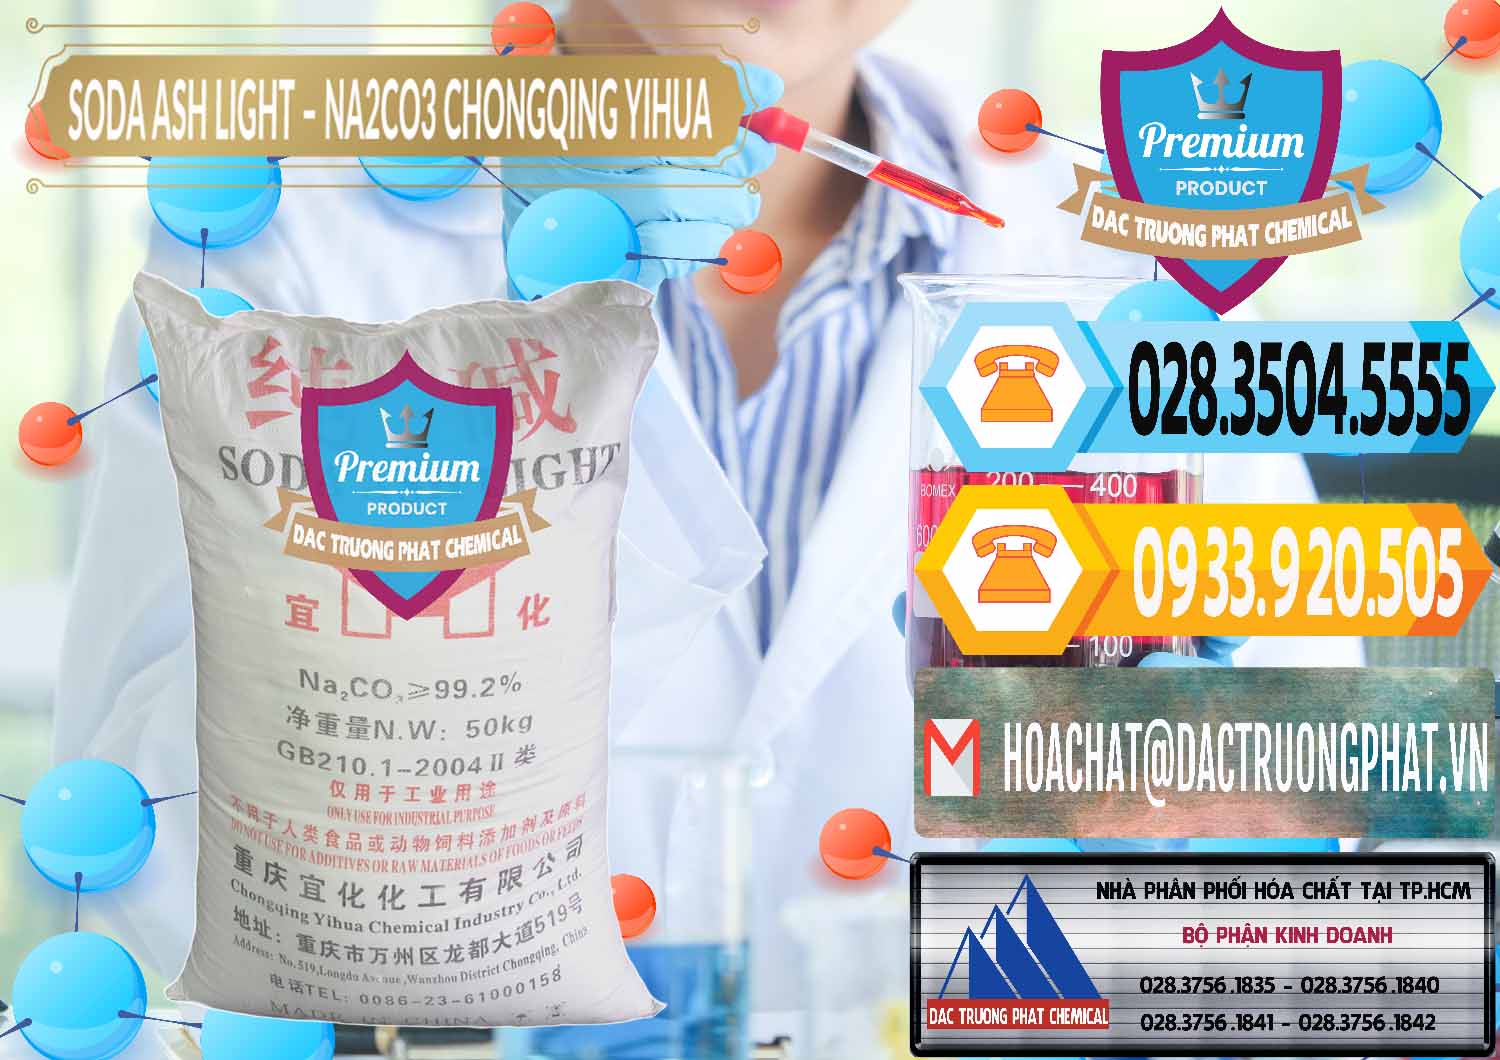 Công ty chuyên cung ứng & bán Soda Ash Light - NA2CO3 Chongqing Yihua Trung Quốc China - 0129 - Cty chuyên cung ứng và phân phối hóa chất tại TP.HCM - hoachattayrua.net